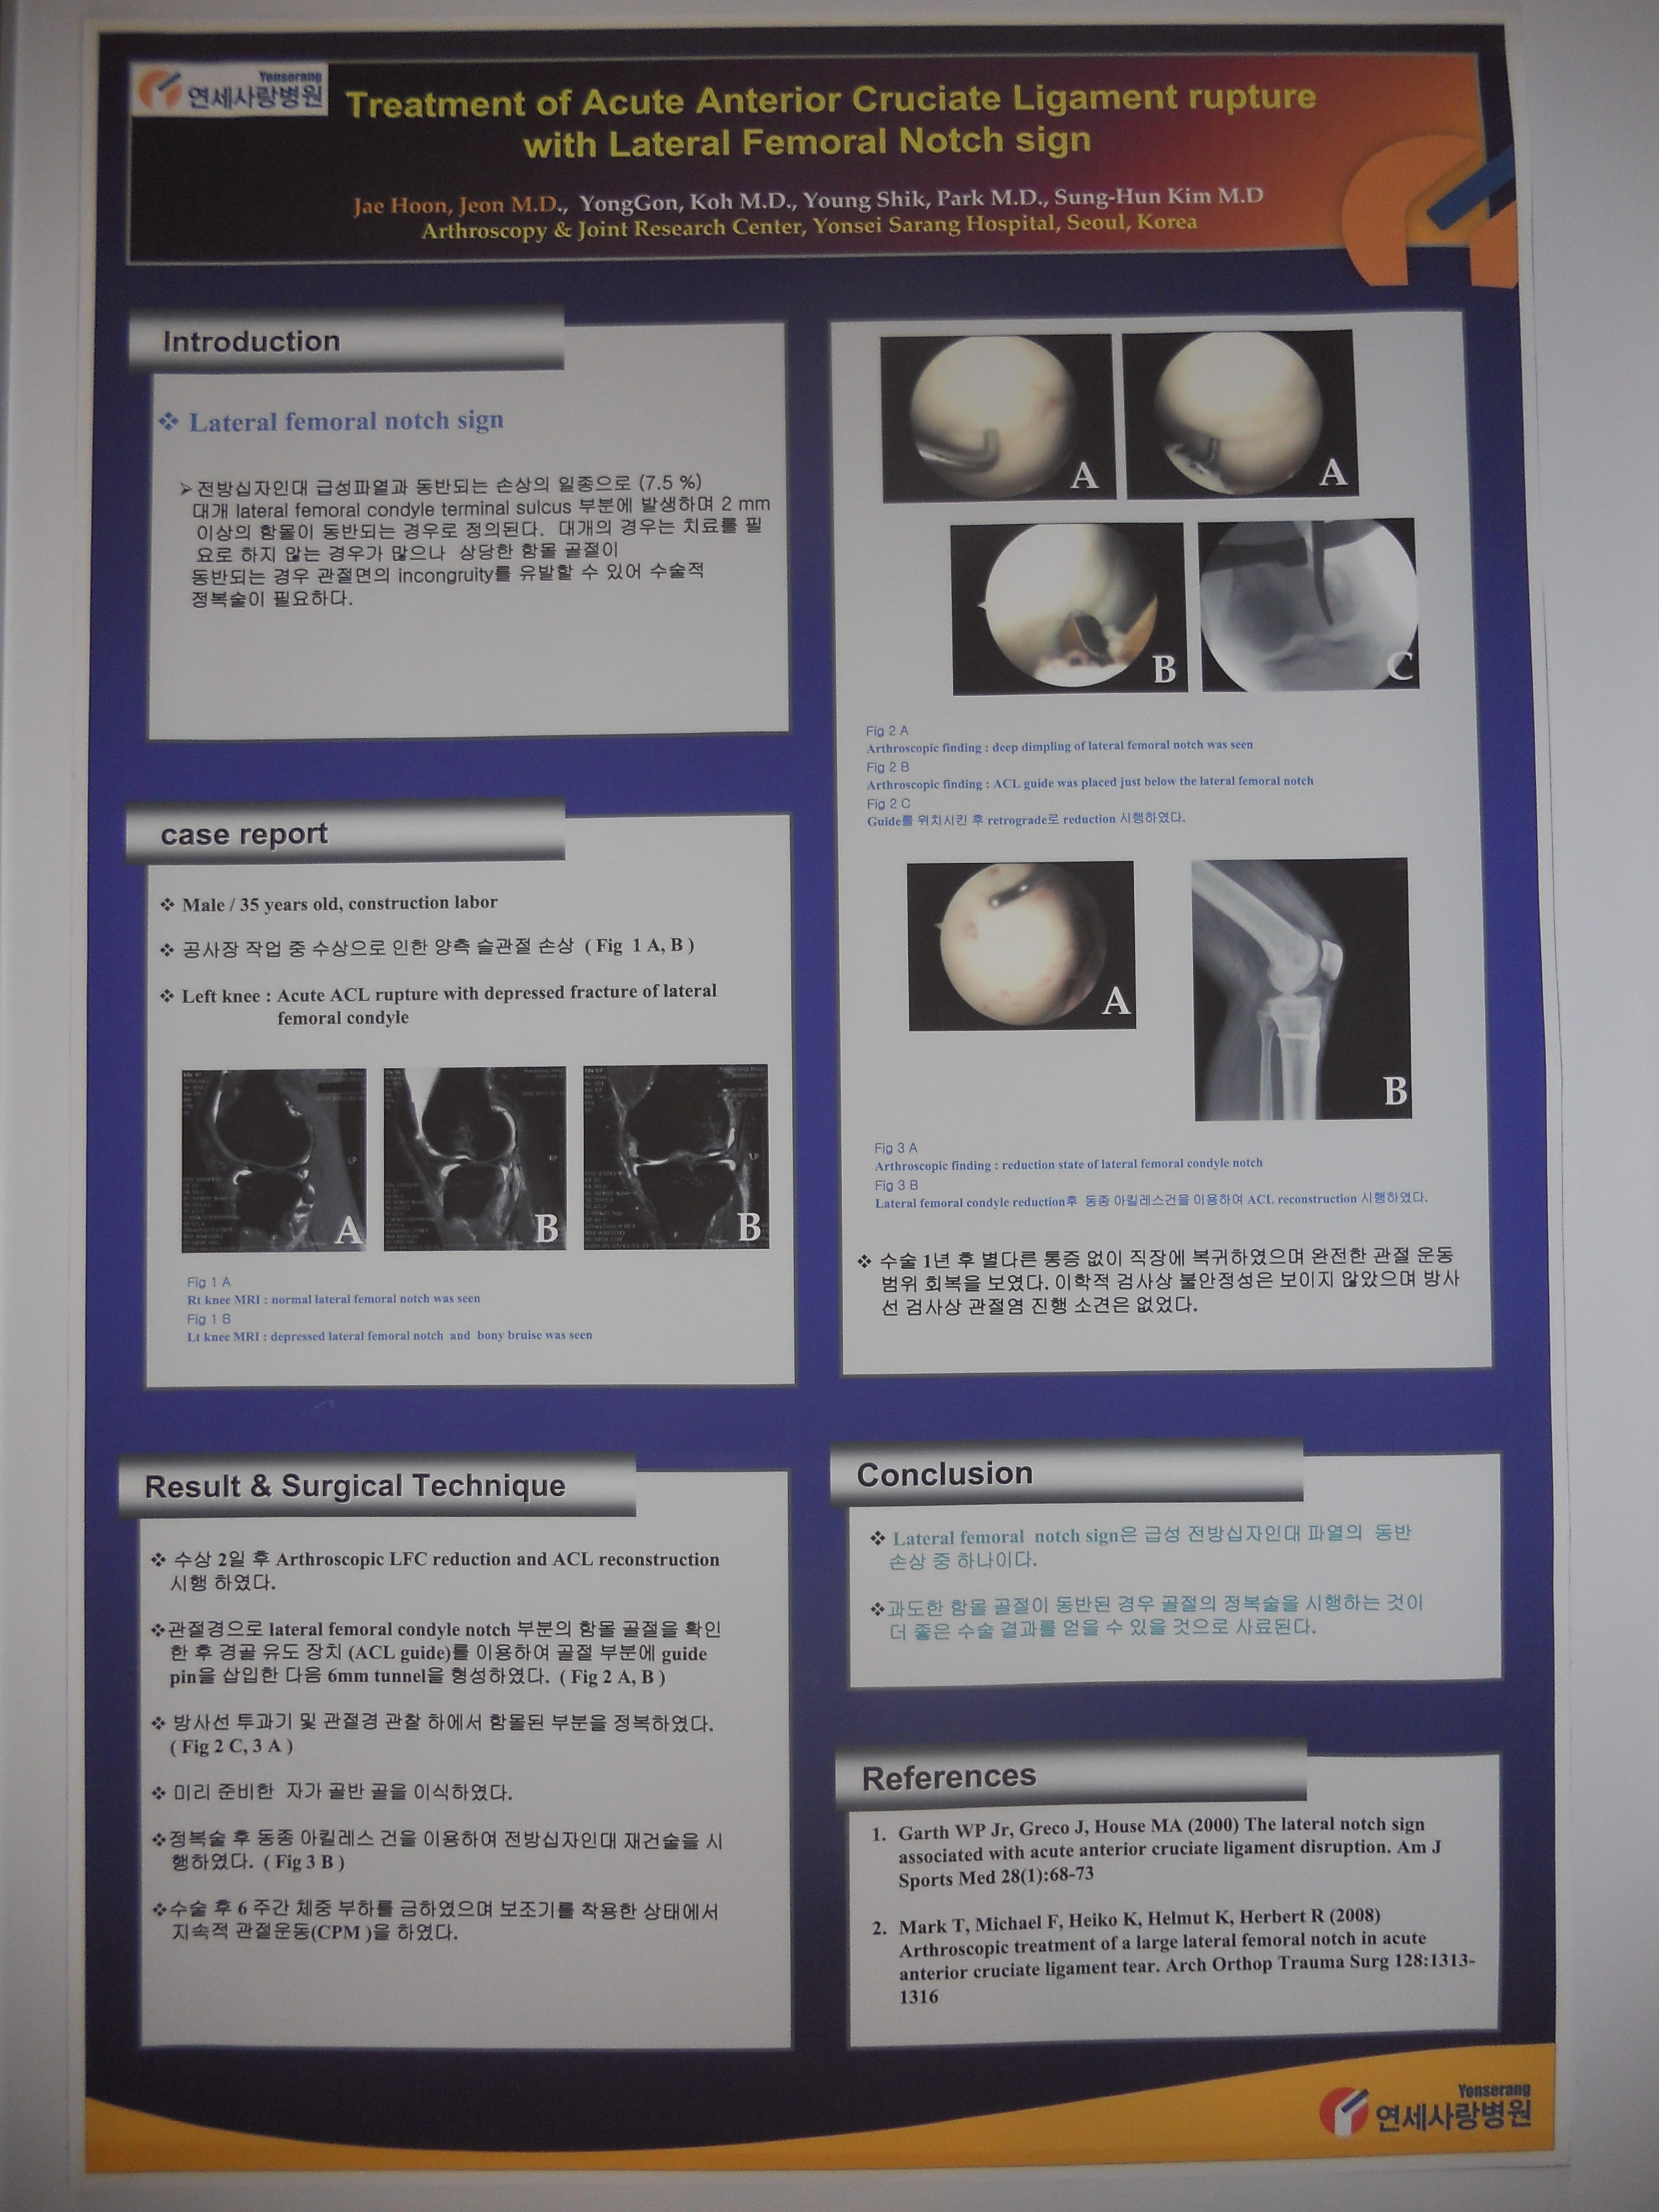 [2010 대한정형외과학회 포스터부문] 급성 전방십자인대 손상과 동반된 대퇴골 외측과 절흔 증후의 치료 게시글의 1번째 첨부파일입니다.